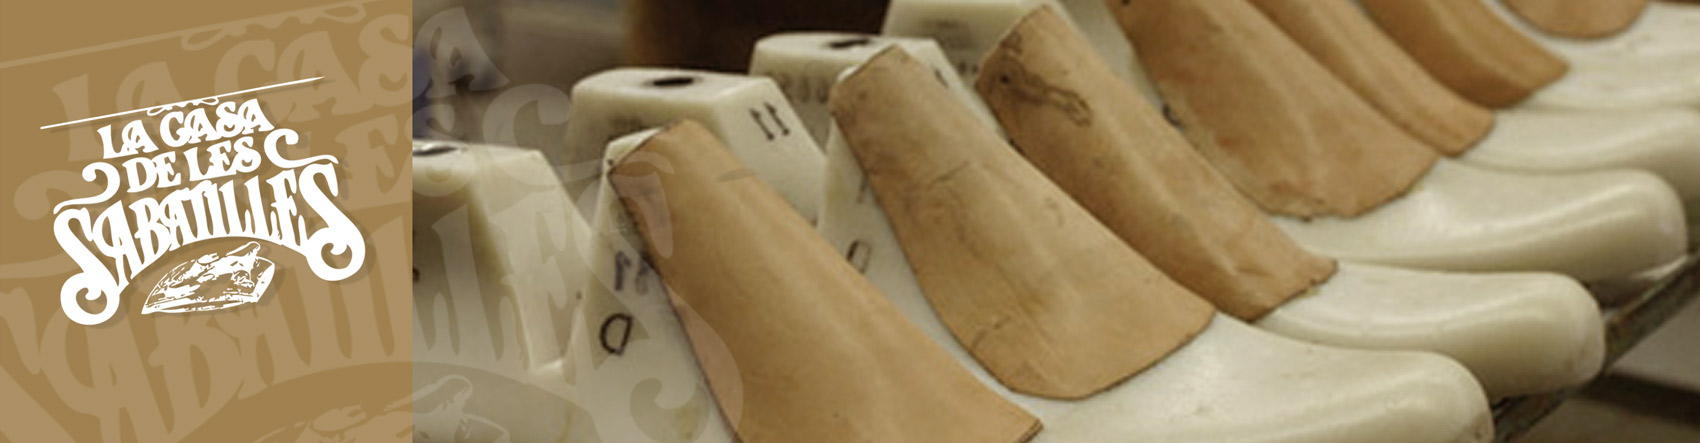 Venta de zapatillas Nordikas zapatillas esparto, hechas a mano en España. Outlet